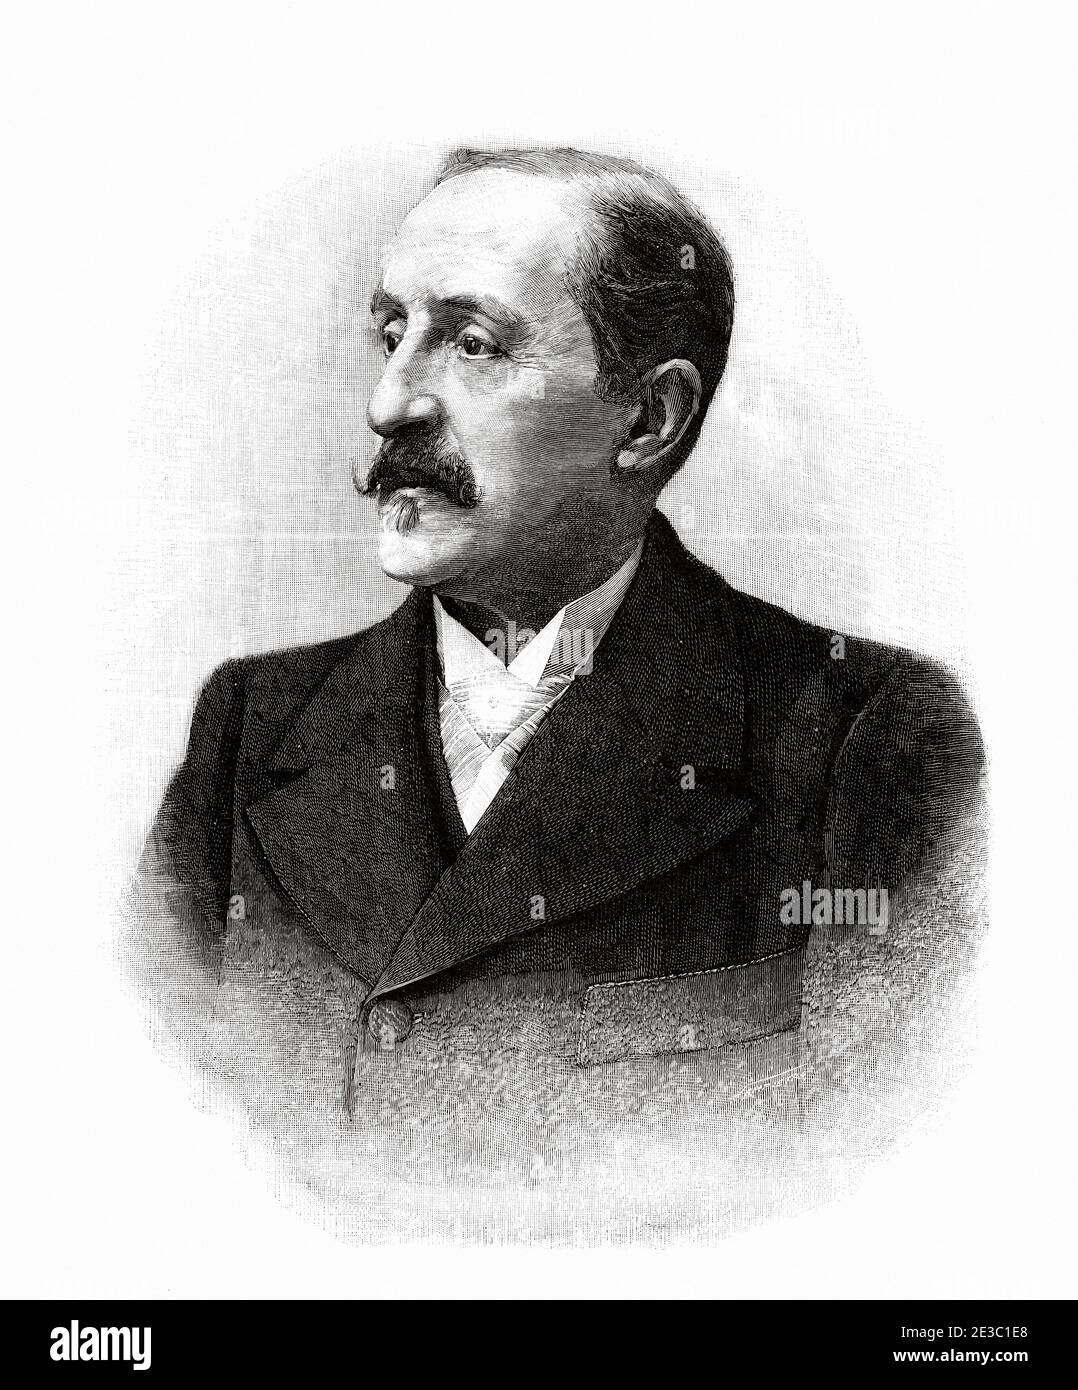 Luis Alvarez Catalá (Madrid, 1836 – 1901) è stato un pittore e ritrattista spagnolo, direttore del Museo Nazionale del Prado. Da la Ilustracion Española y americana 1895 Foto Stock